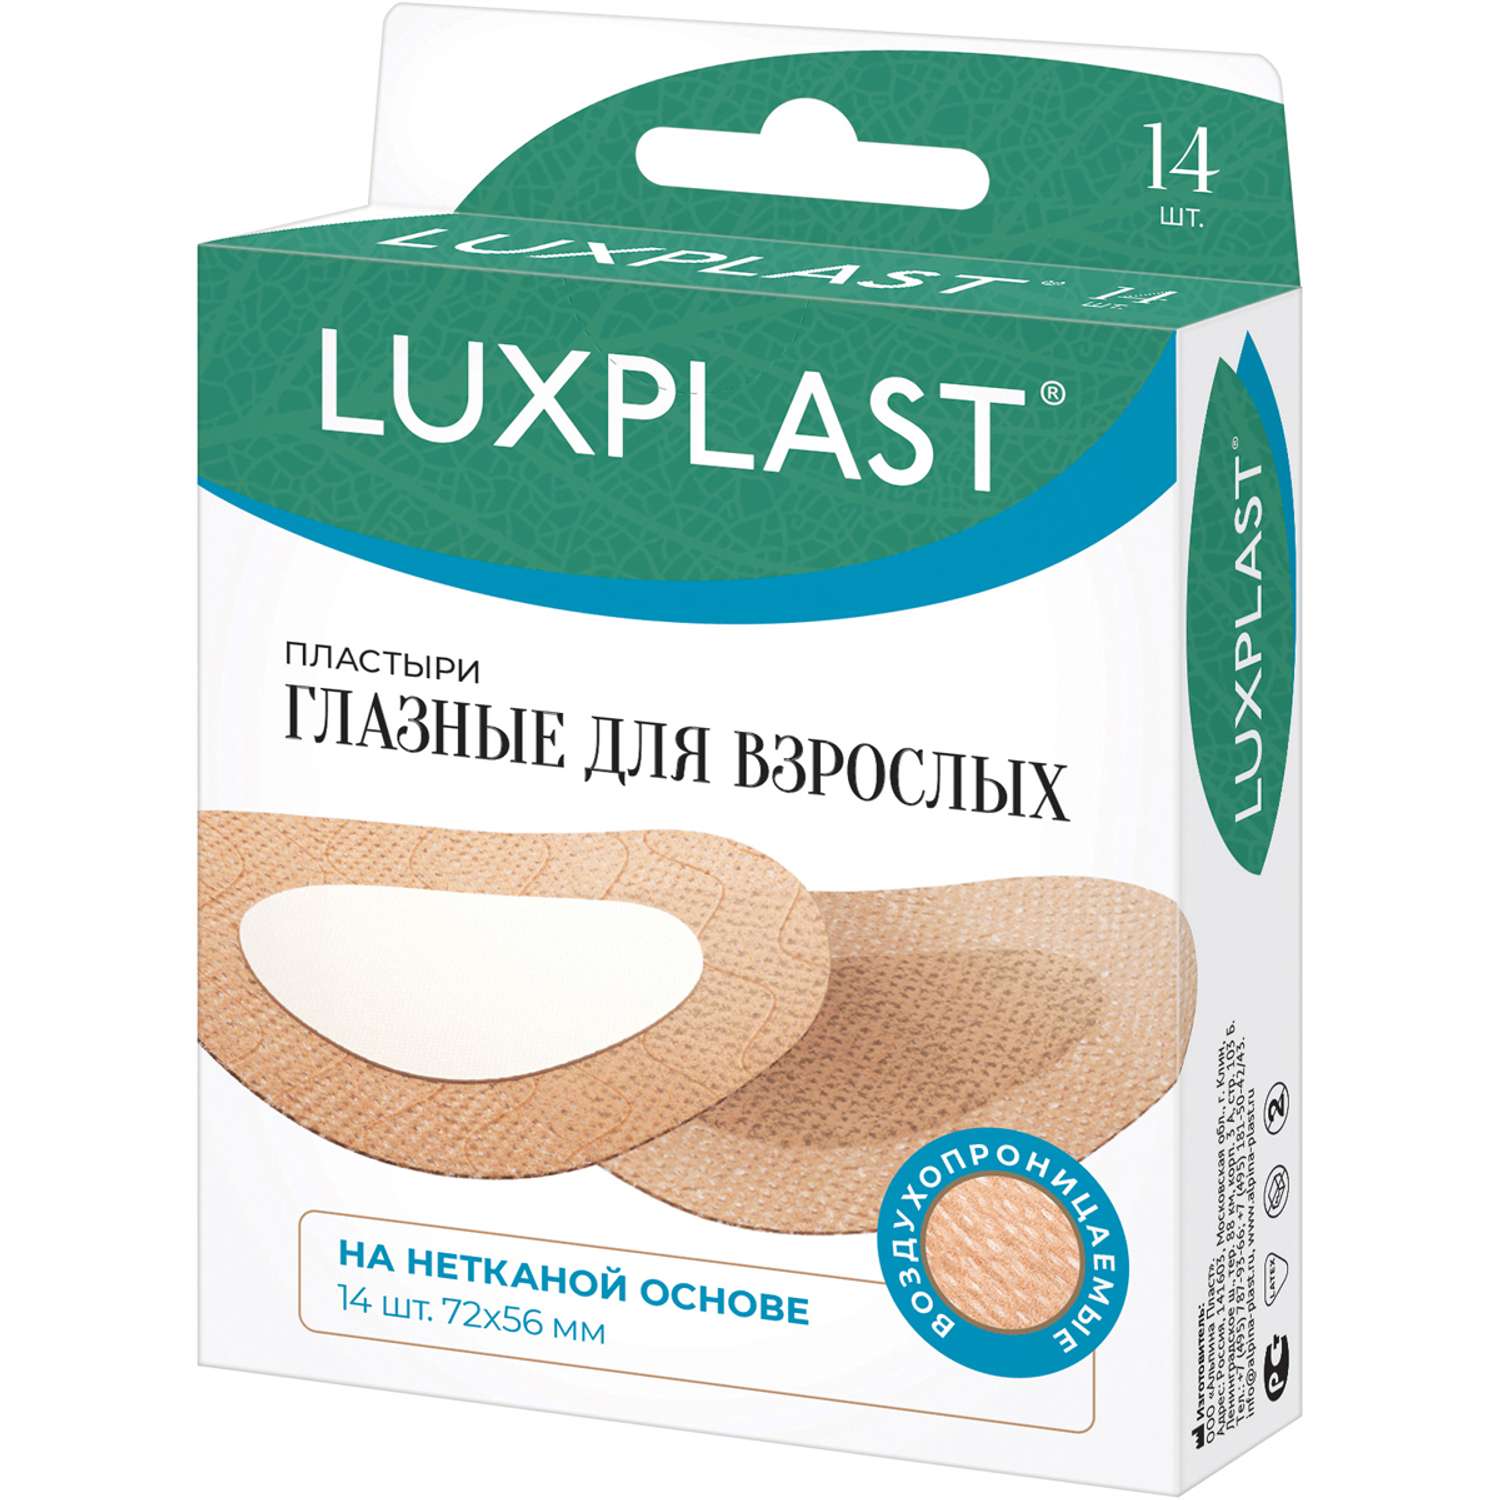 Пластыри глазные Luxplast для взрослых 14 шт - фото 1